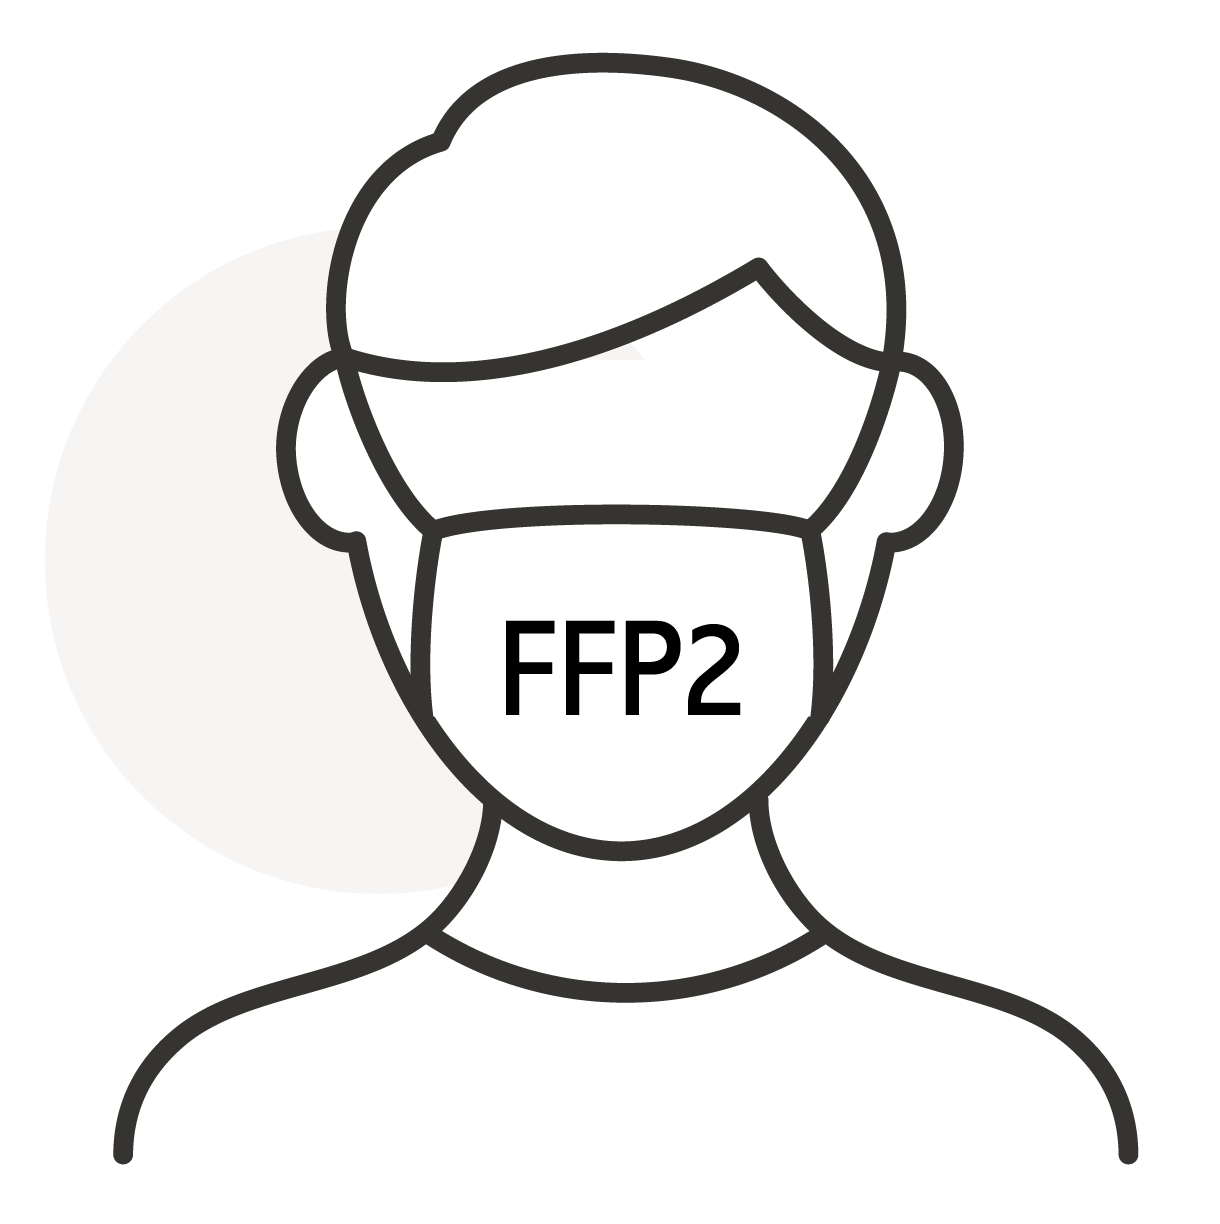 FFP2 Masken